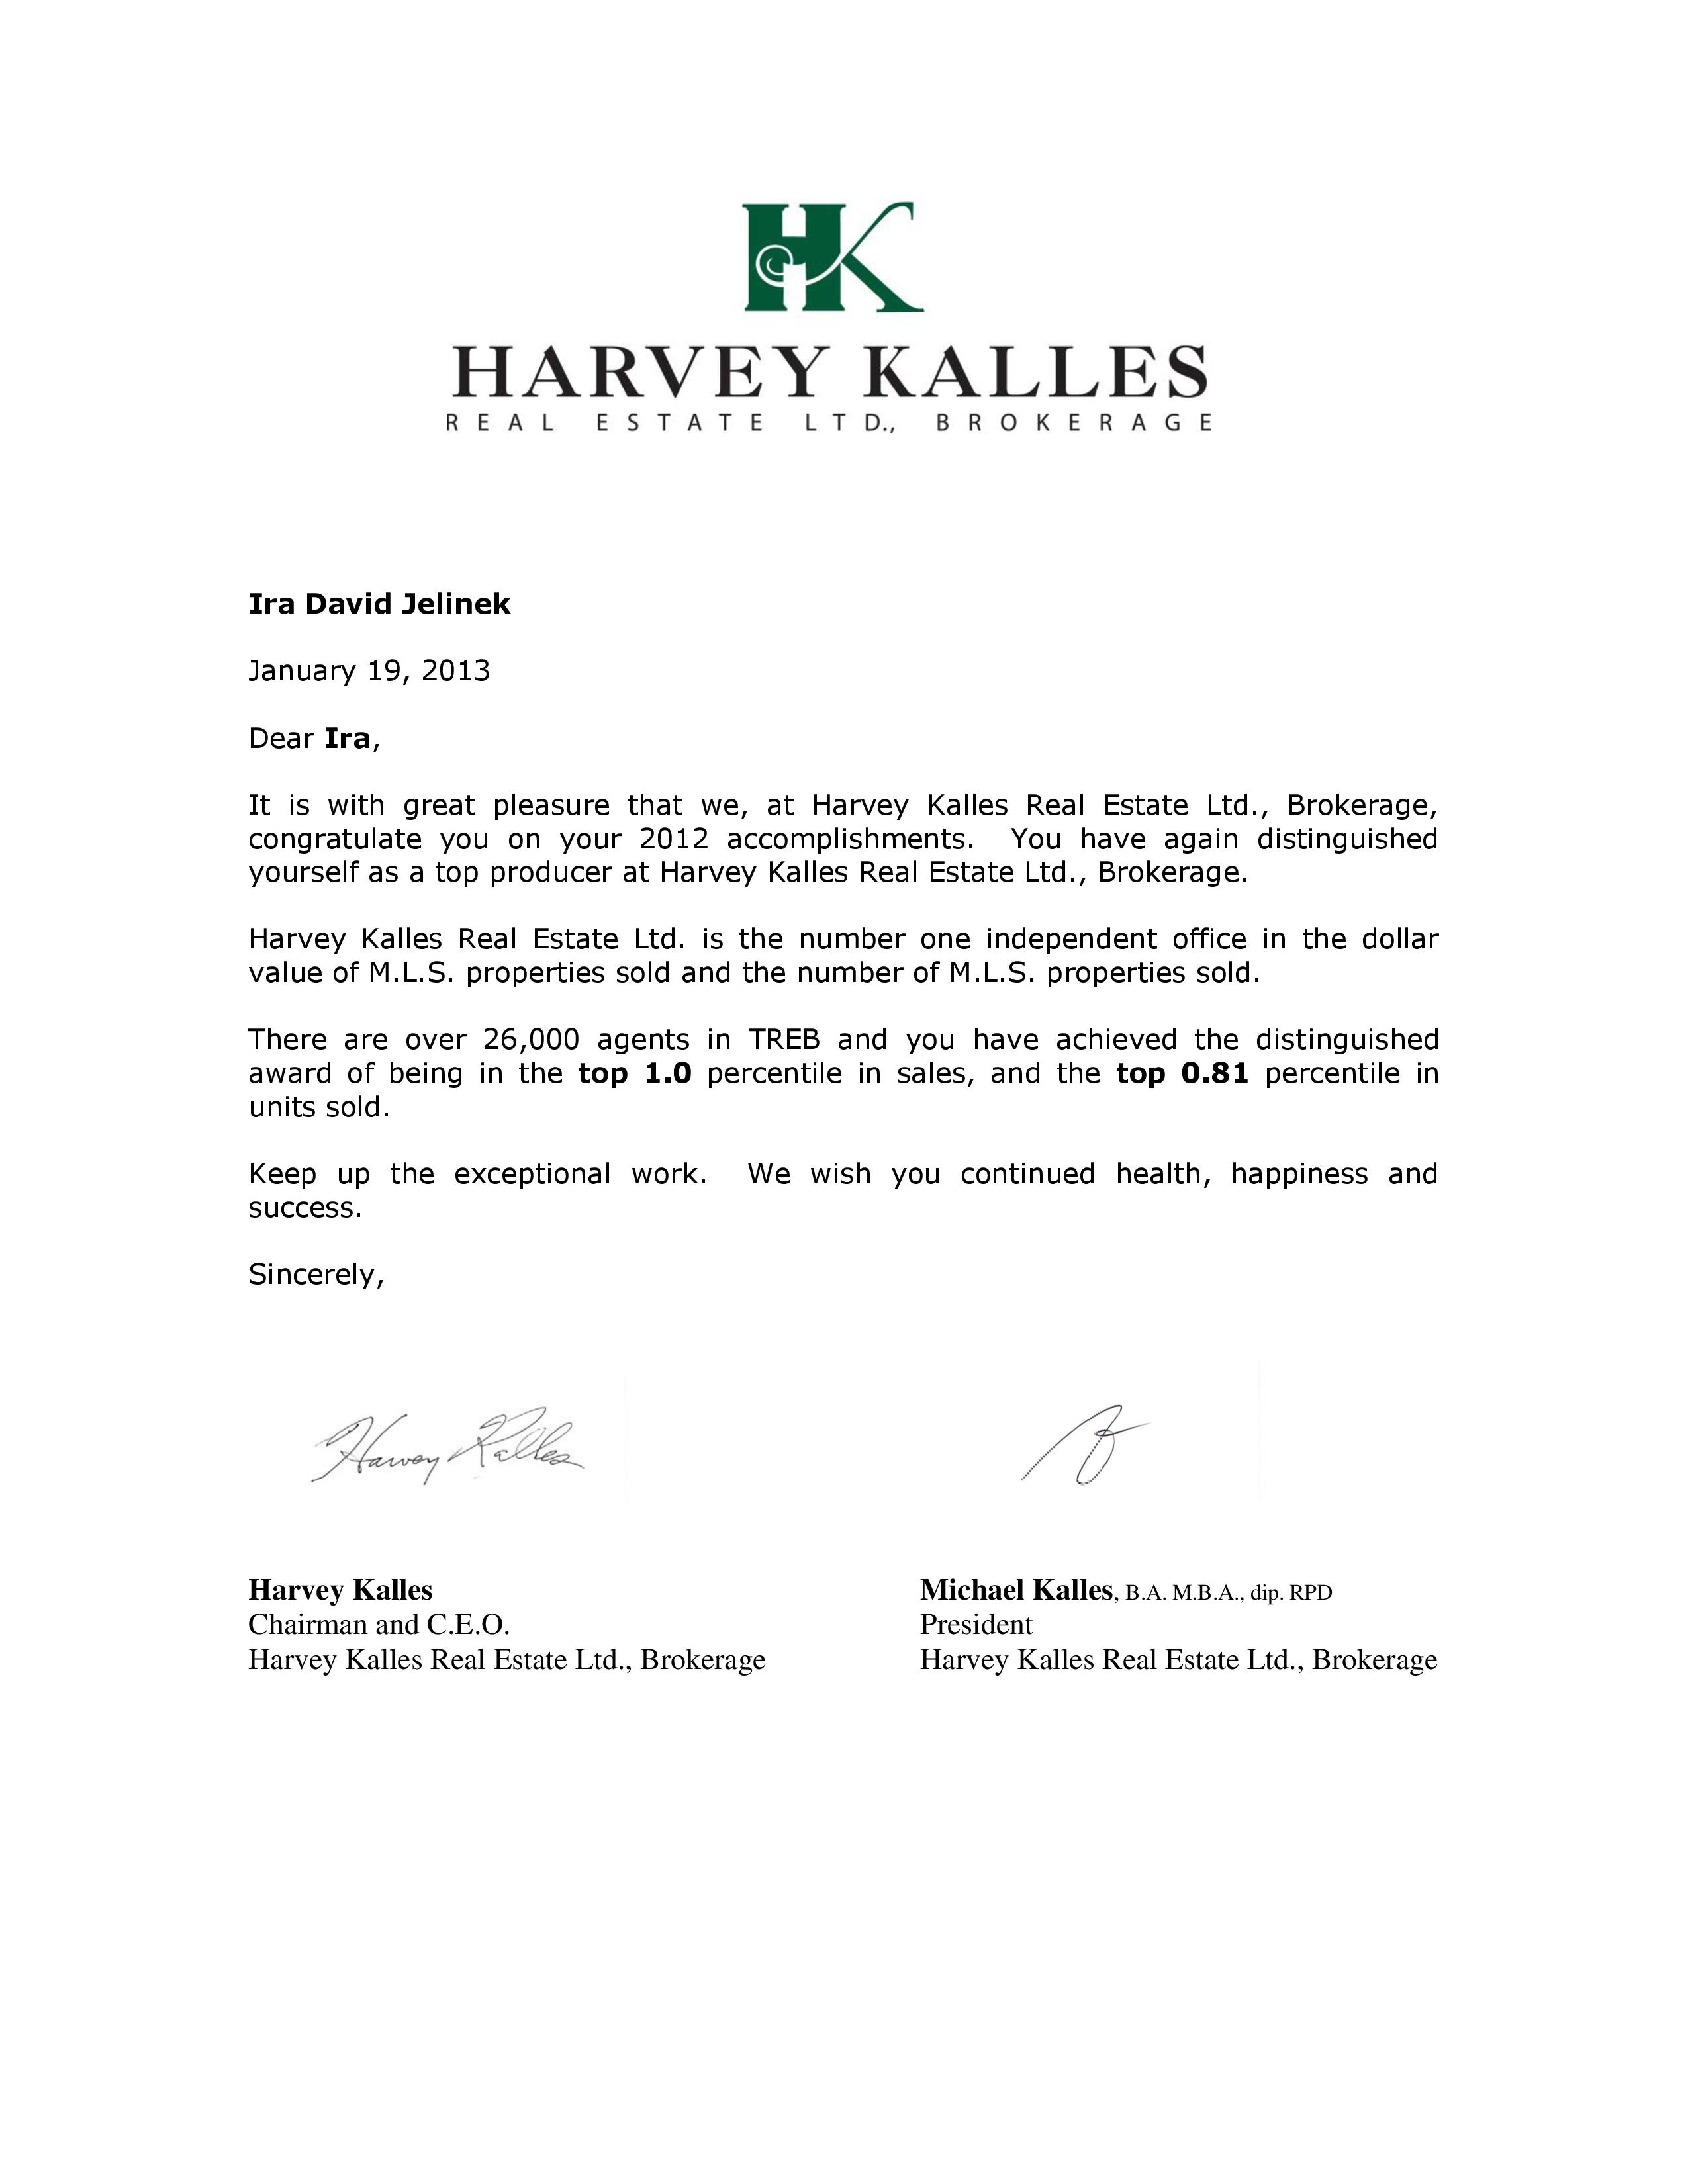 Harvey Keller Letter 1